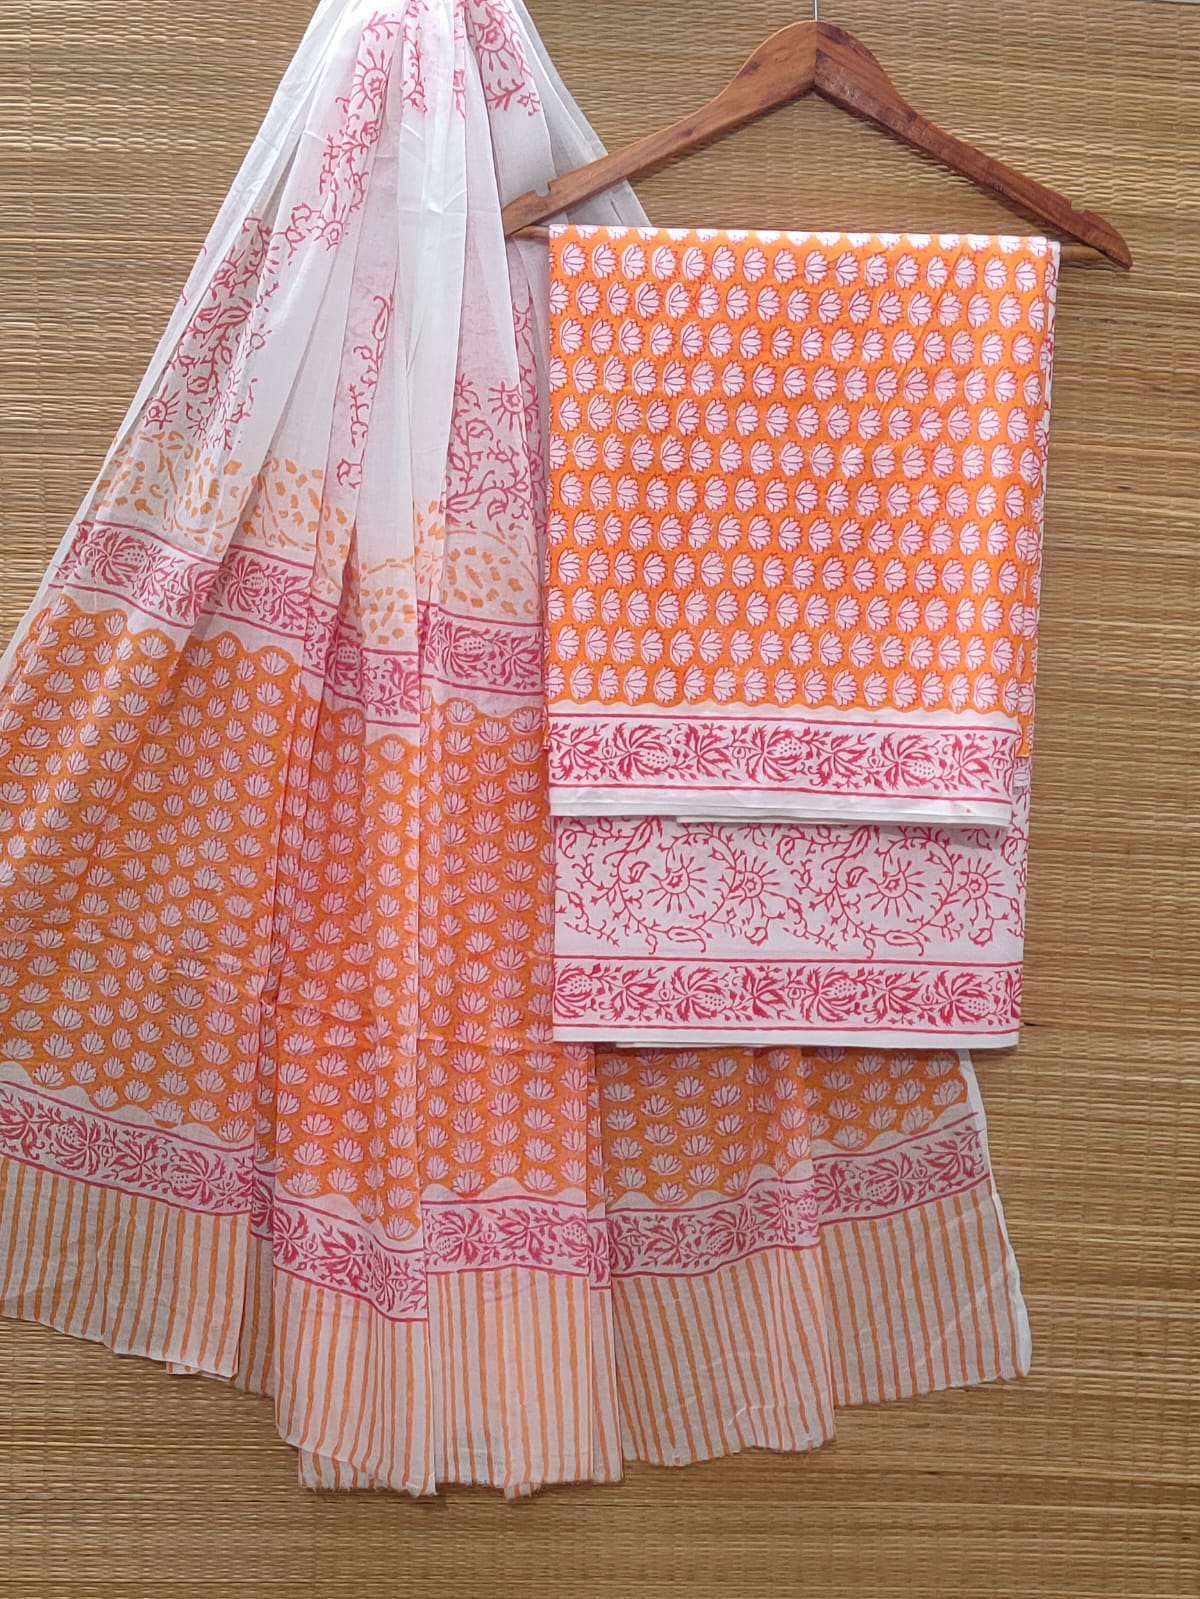 Hand Block Cotton Unstitched Salwar Suit With Cotton/Mulmul Dupatta - JBOCM118